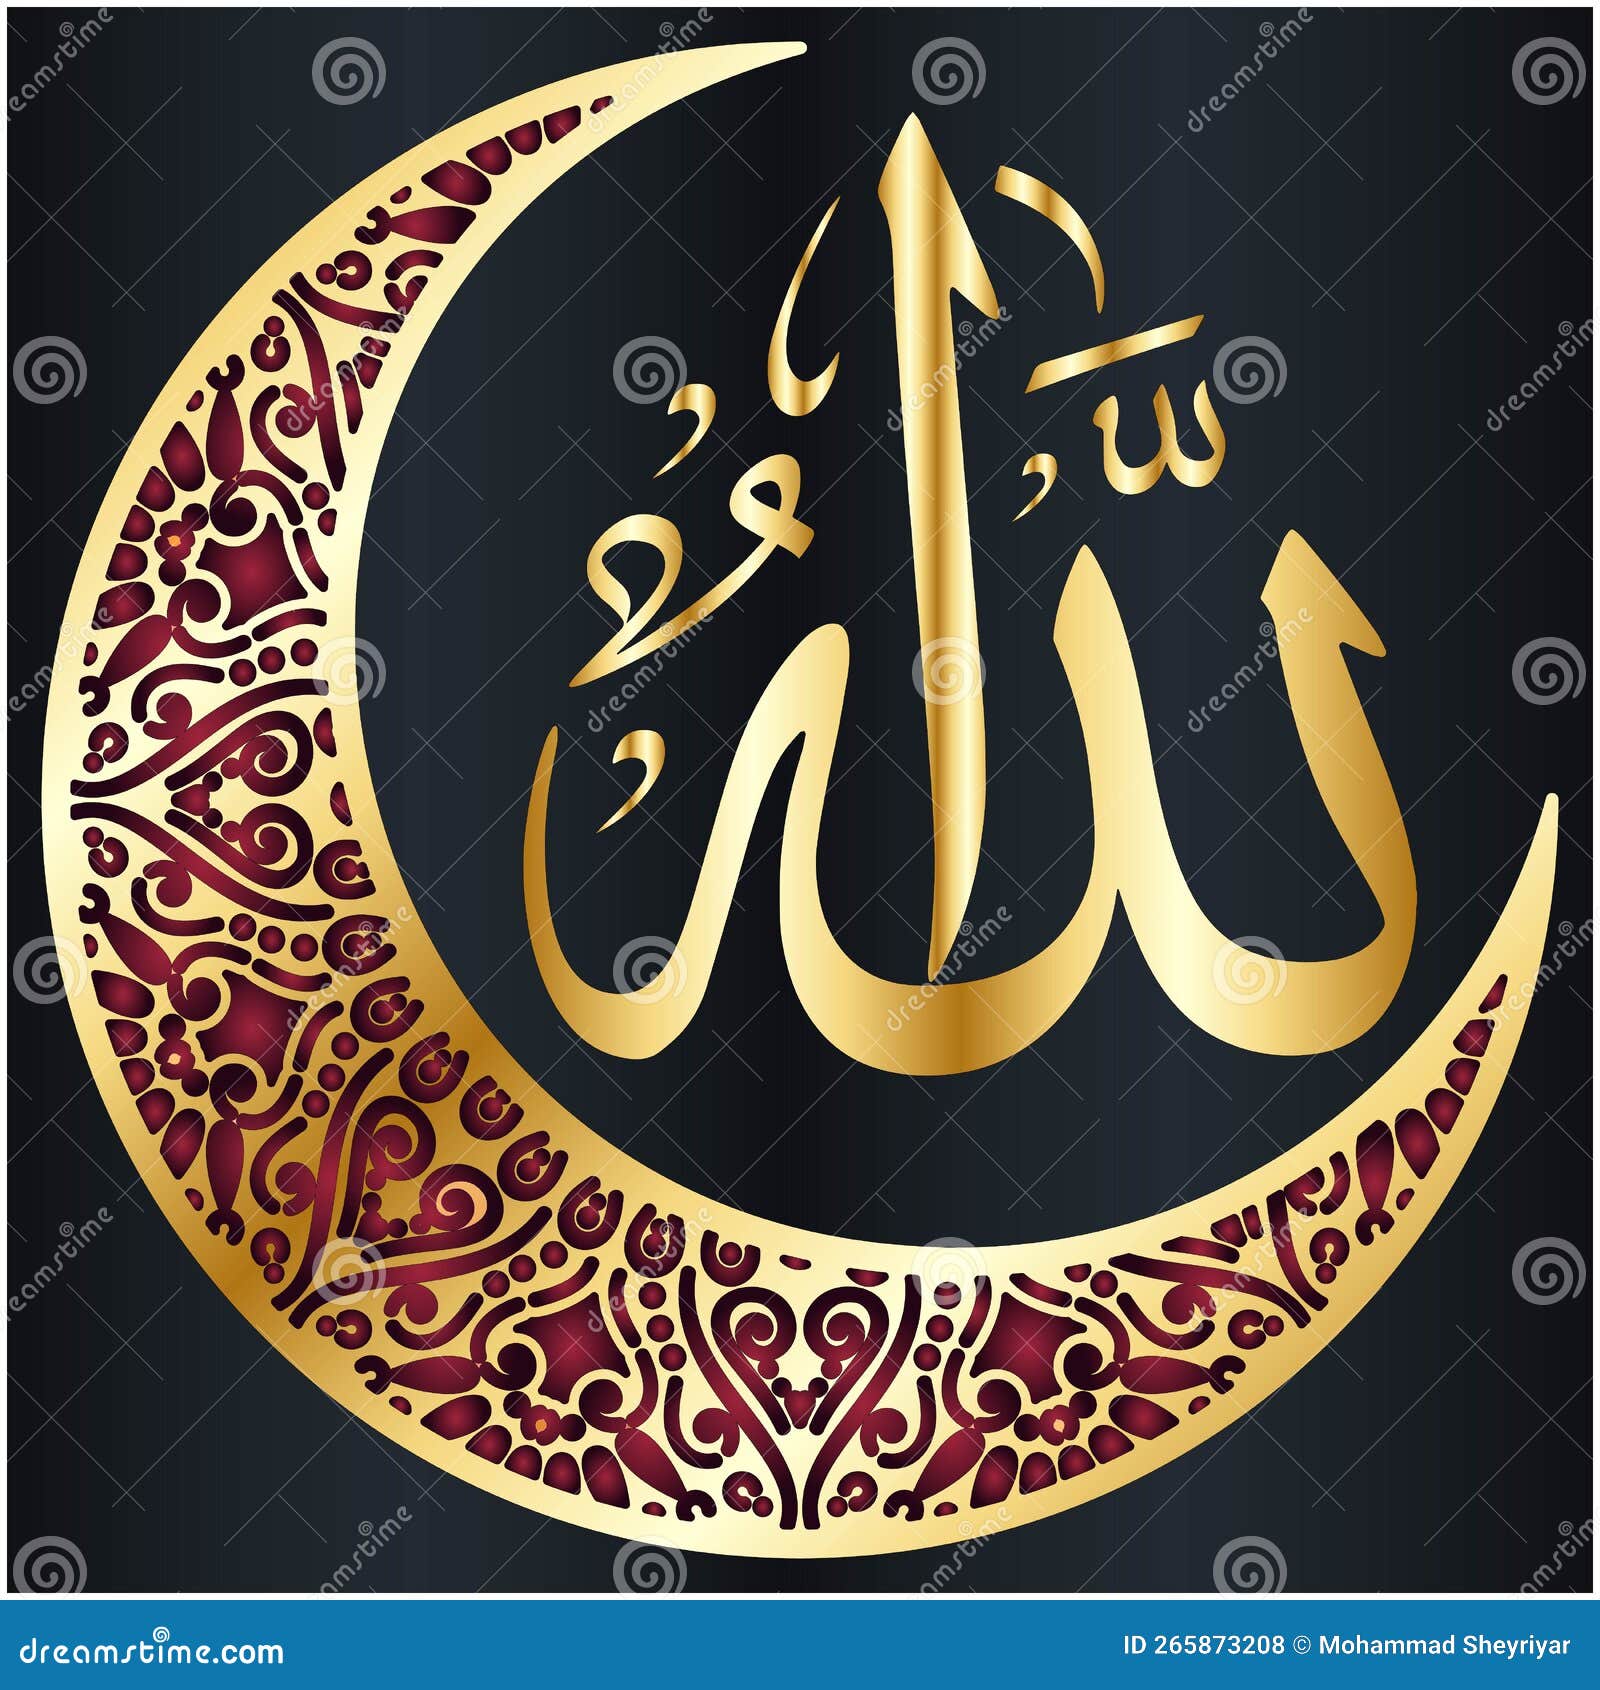 https://thumbs.dreamstime.com/z/name-der-allah-arabischen-islamitischen-kalligraphie-kunst-arabische-islamische-auf-leinwand-f%C3%BCr-wandkunst-und-dekoration-265873208.jpg